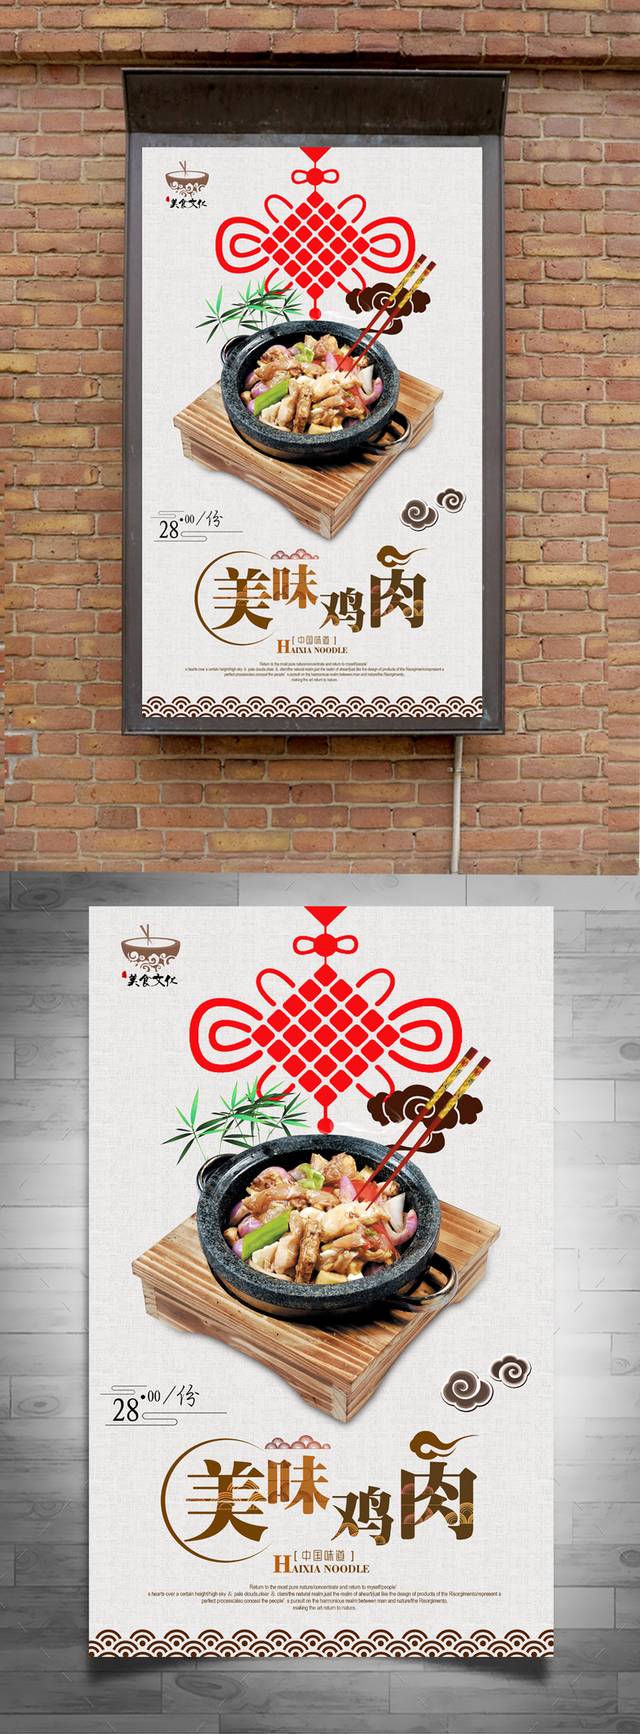 经典大气石锅鸡宣传海报设计